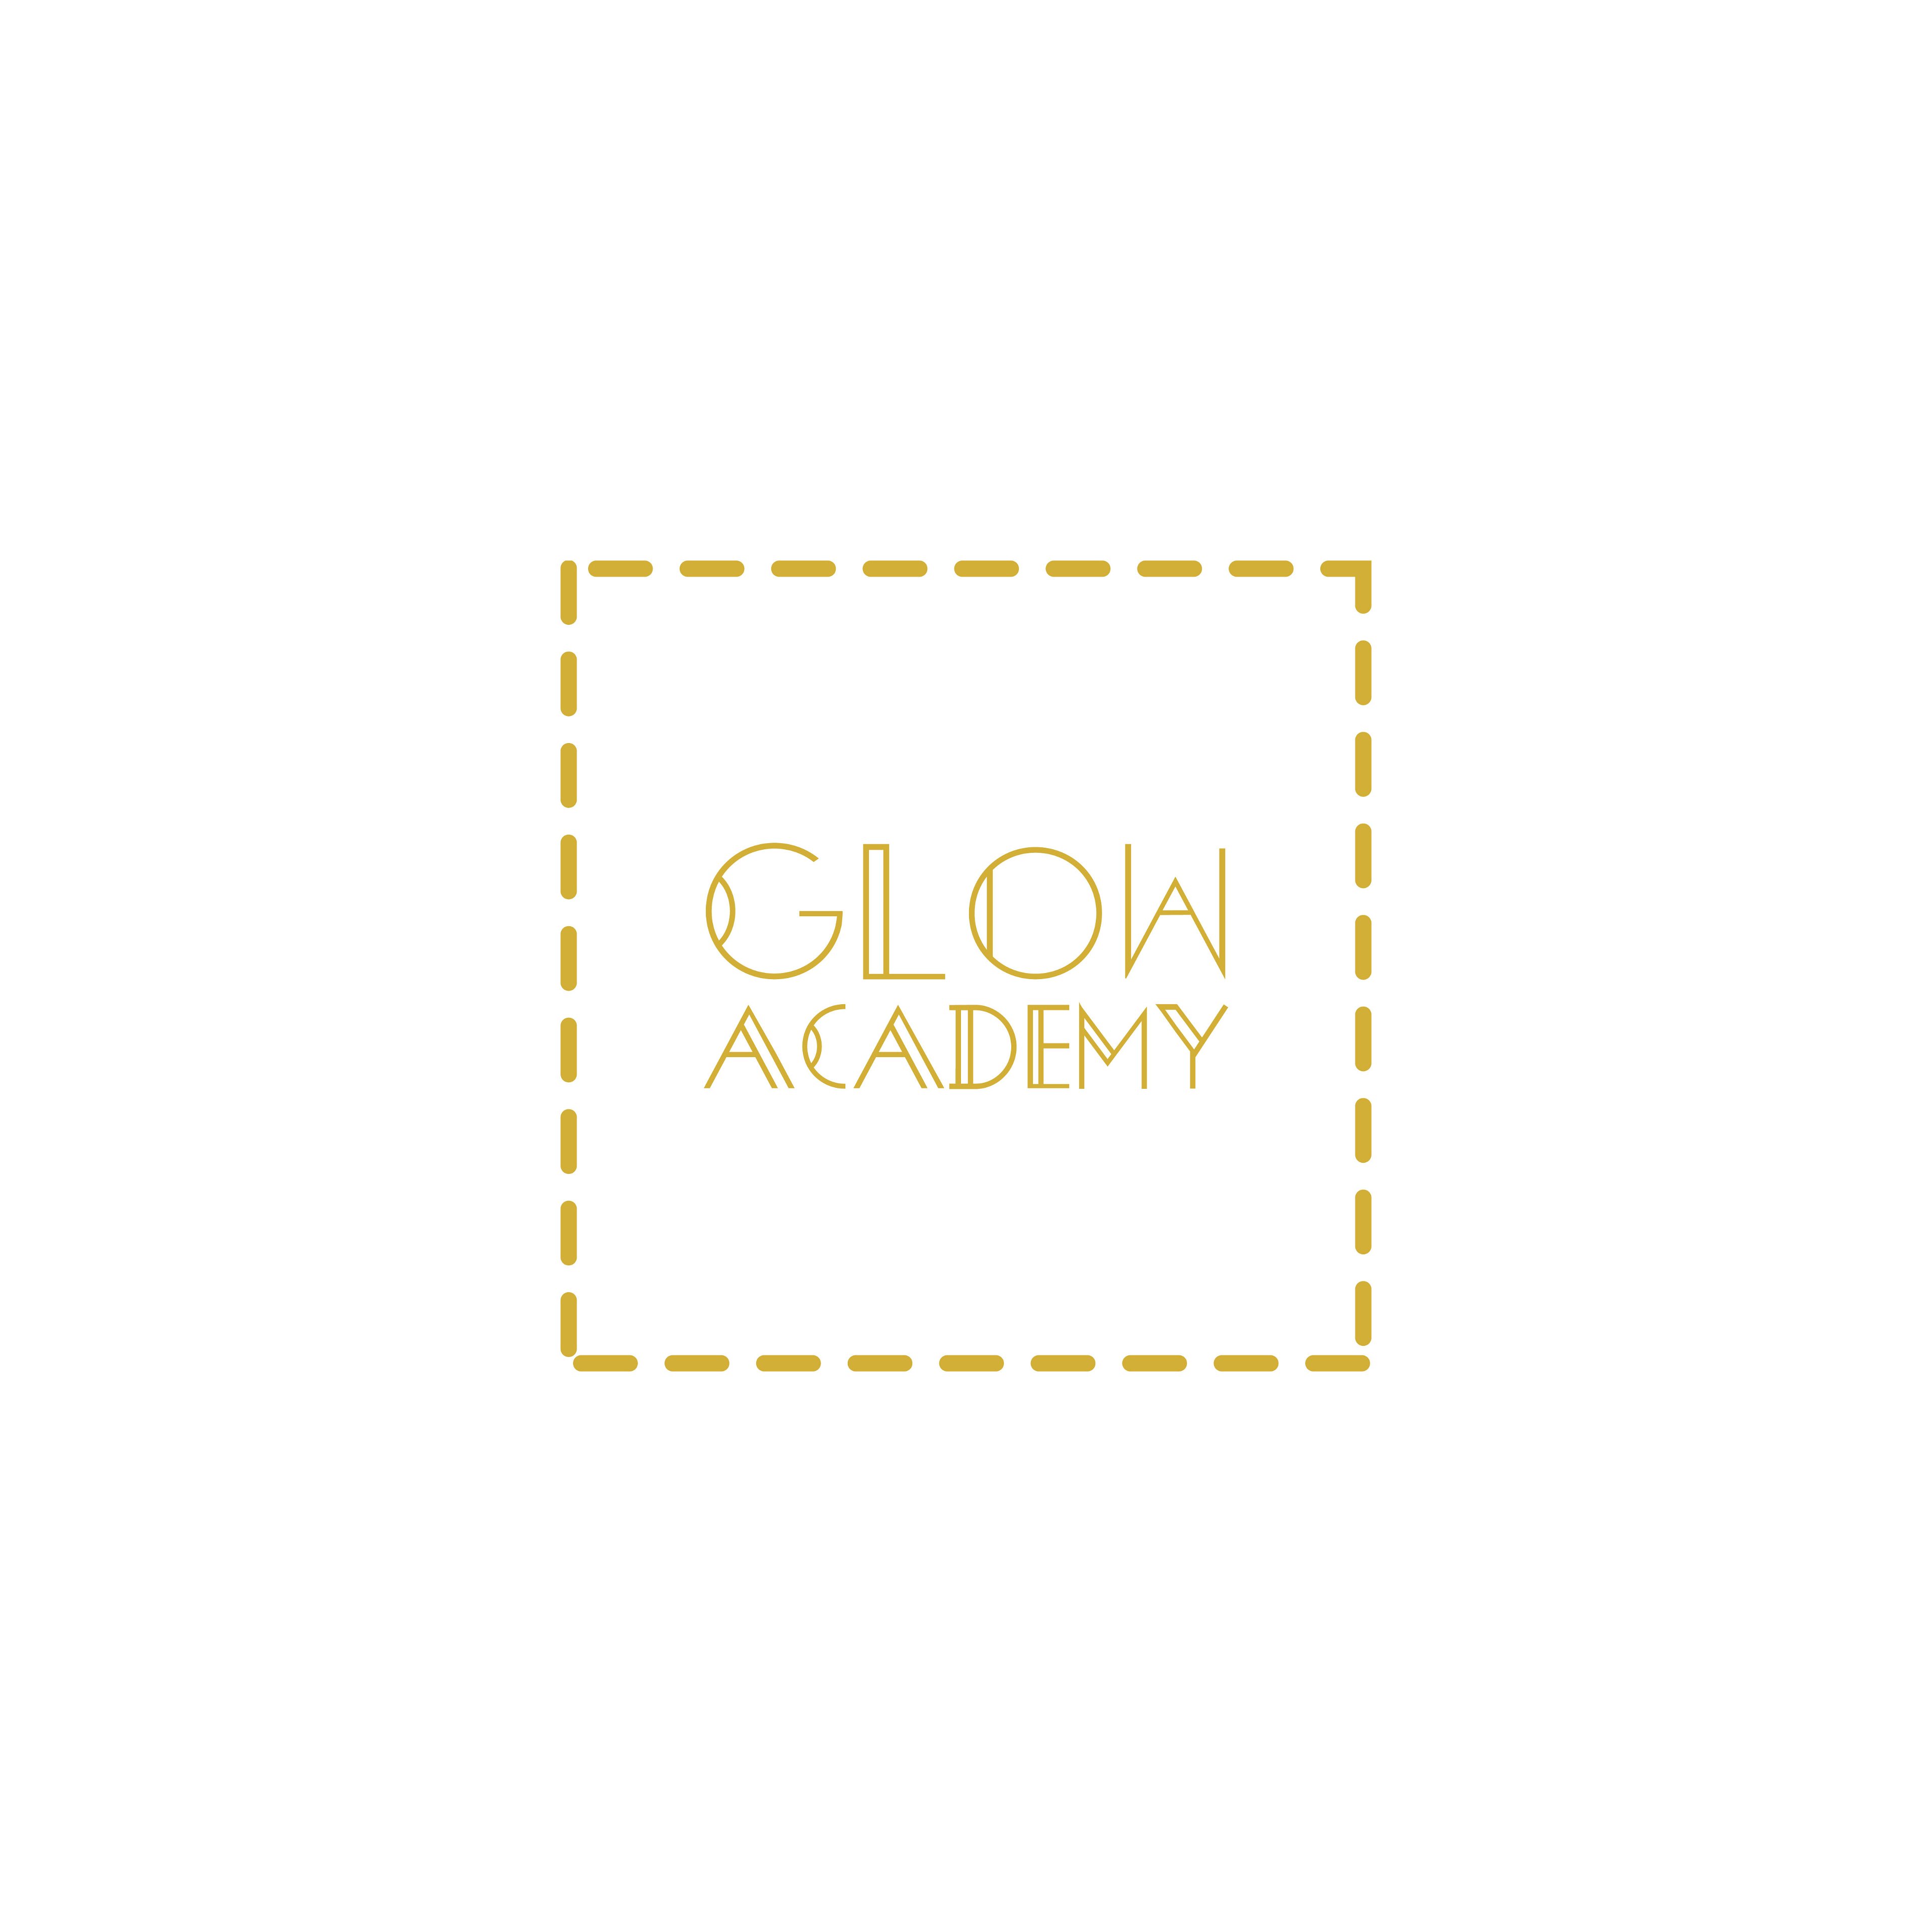 Glow Academy London logo